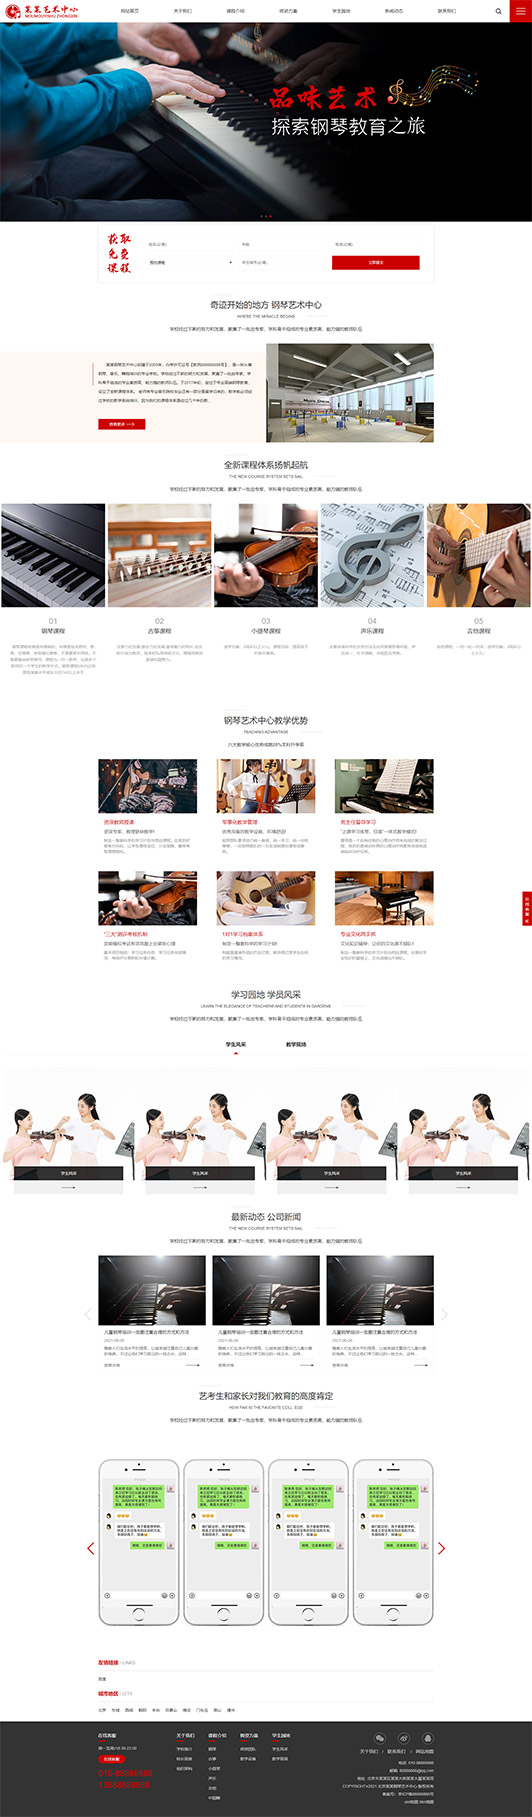 黄冈钢琴艺术培训公司响应式企业网站